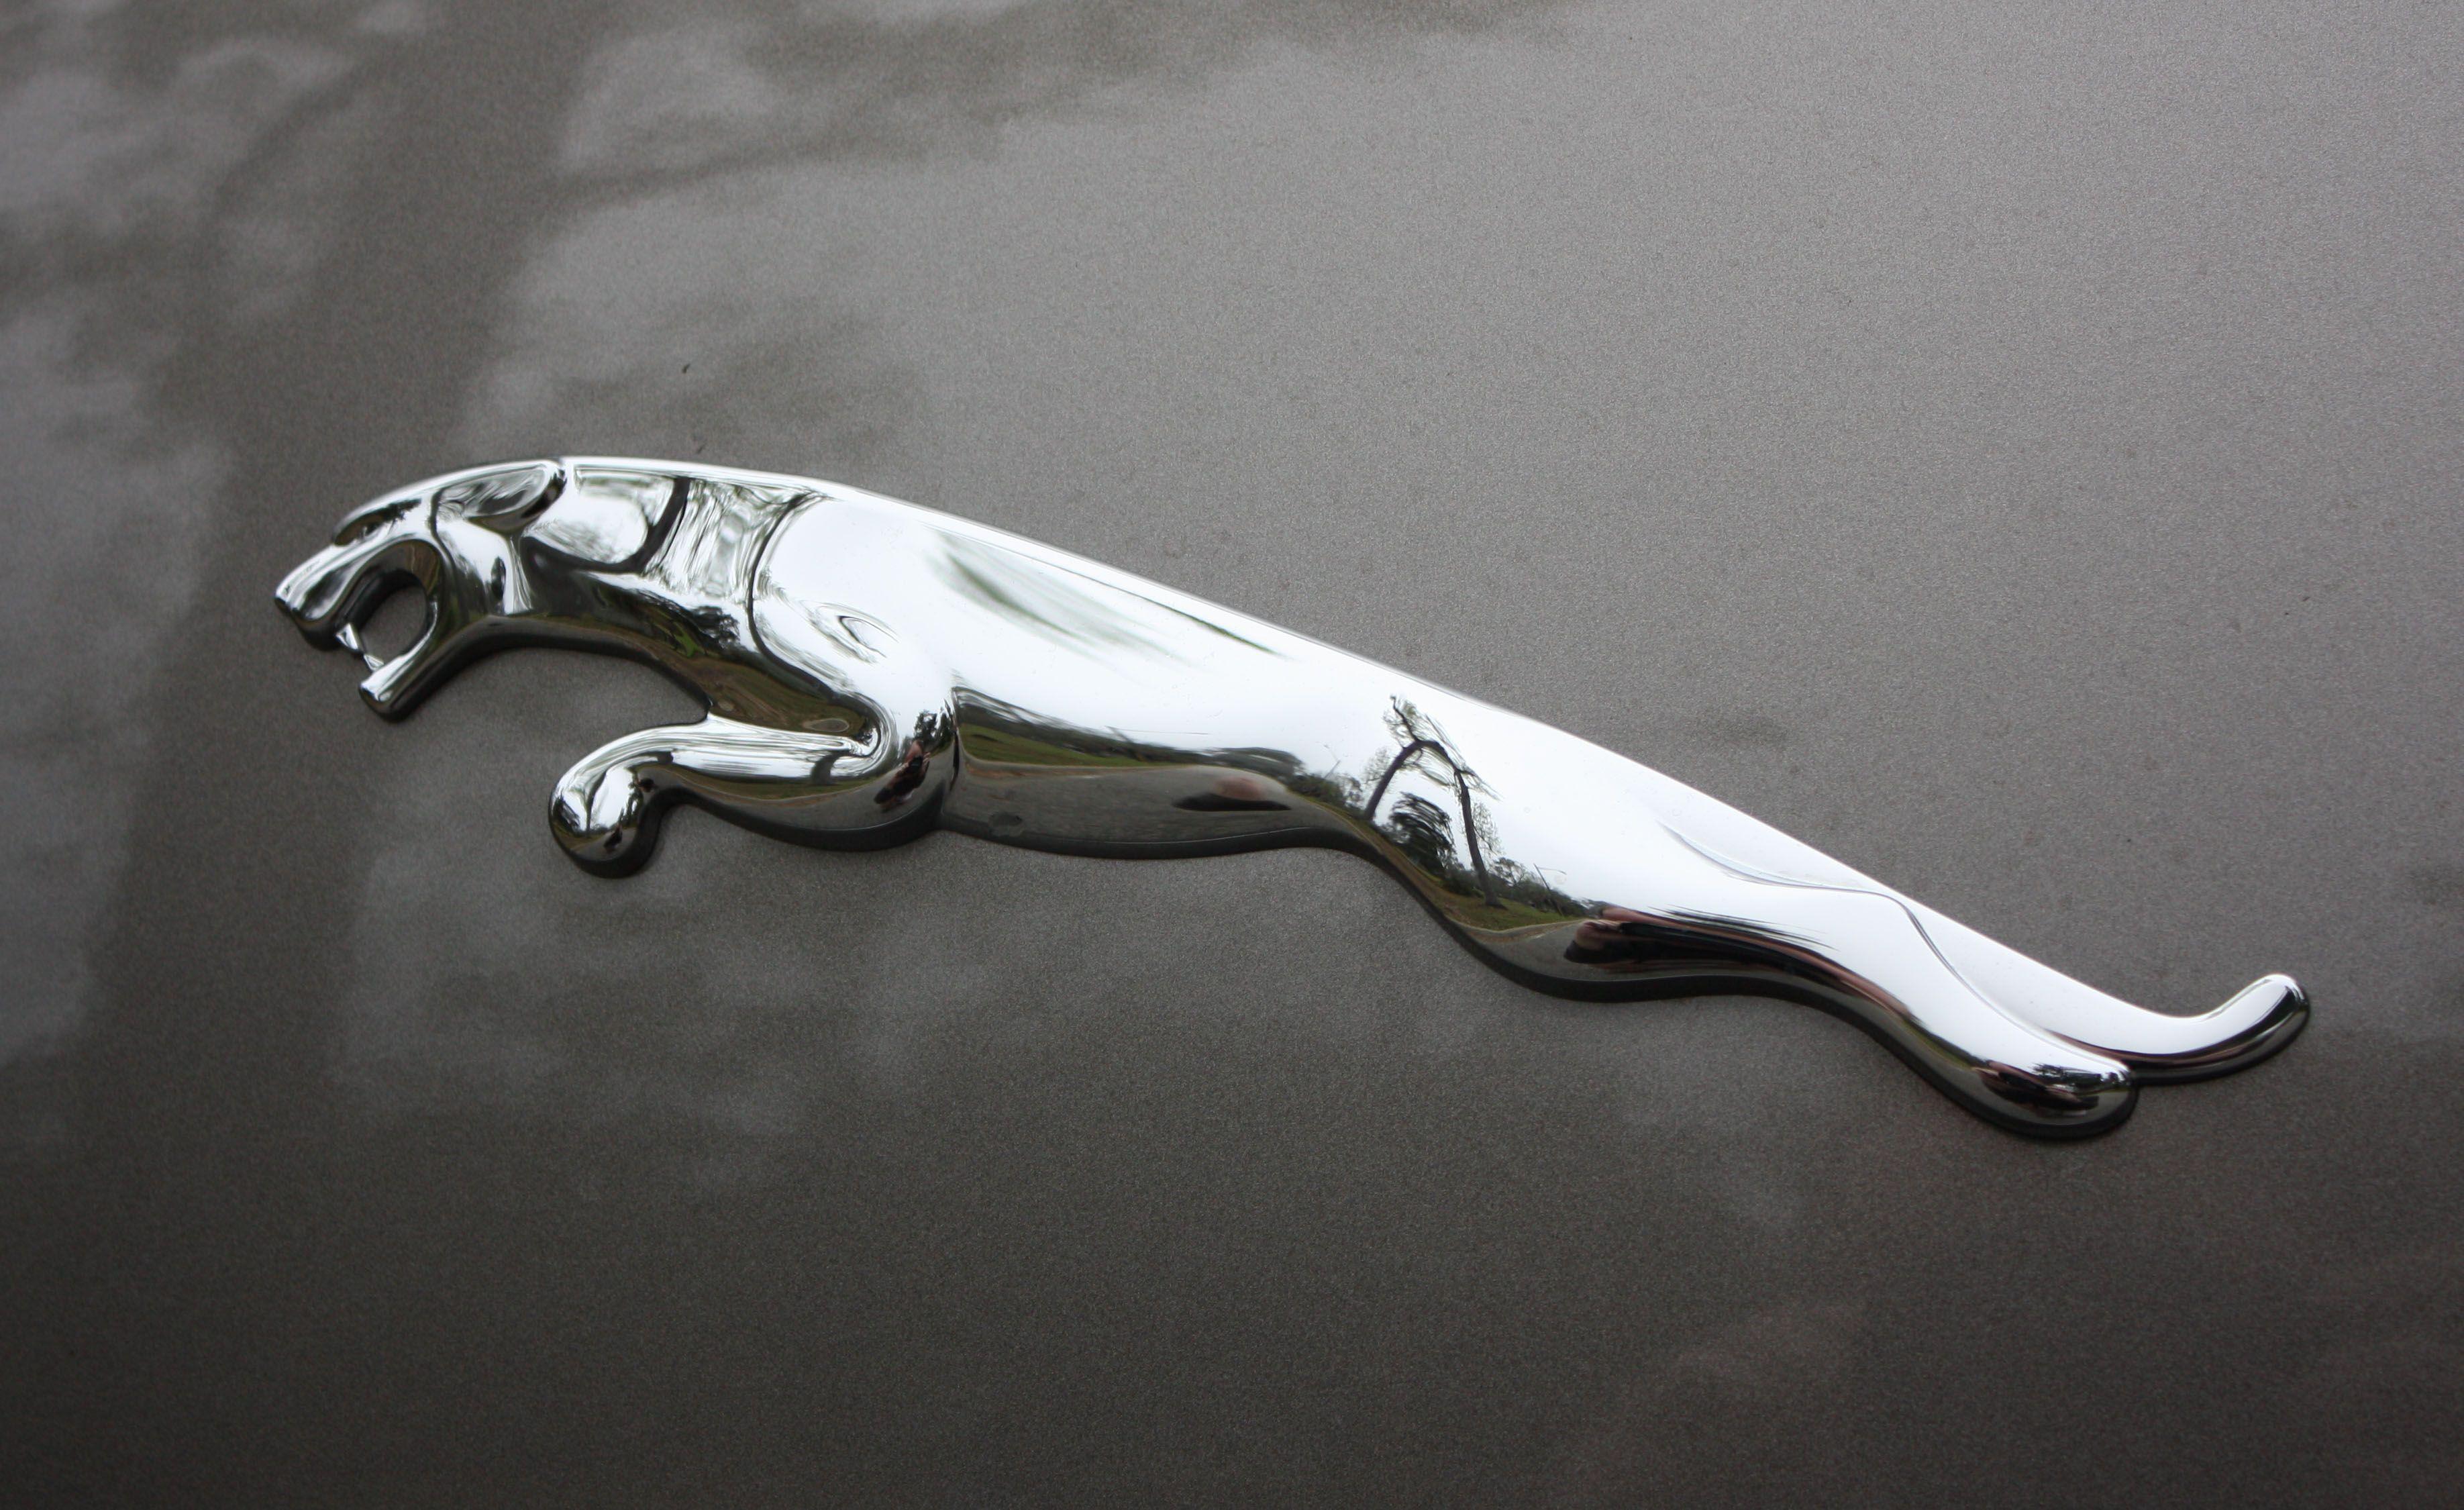 Jaguar Car Symbol Hd Wallpaper